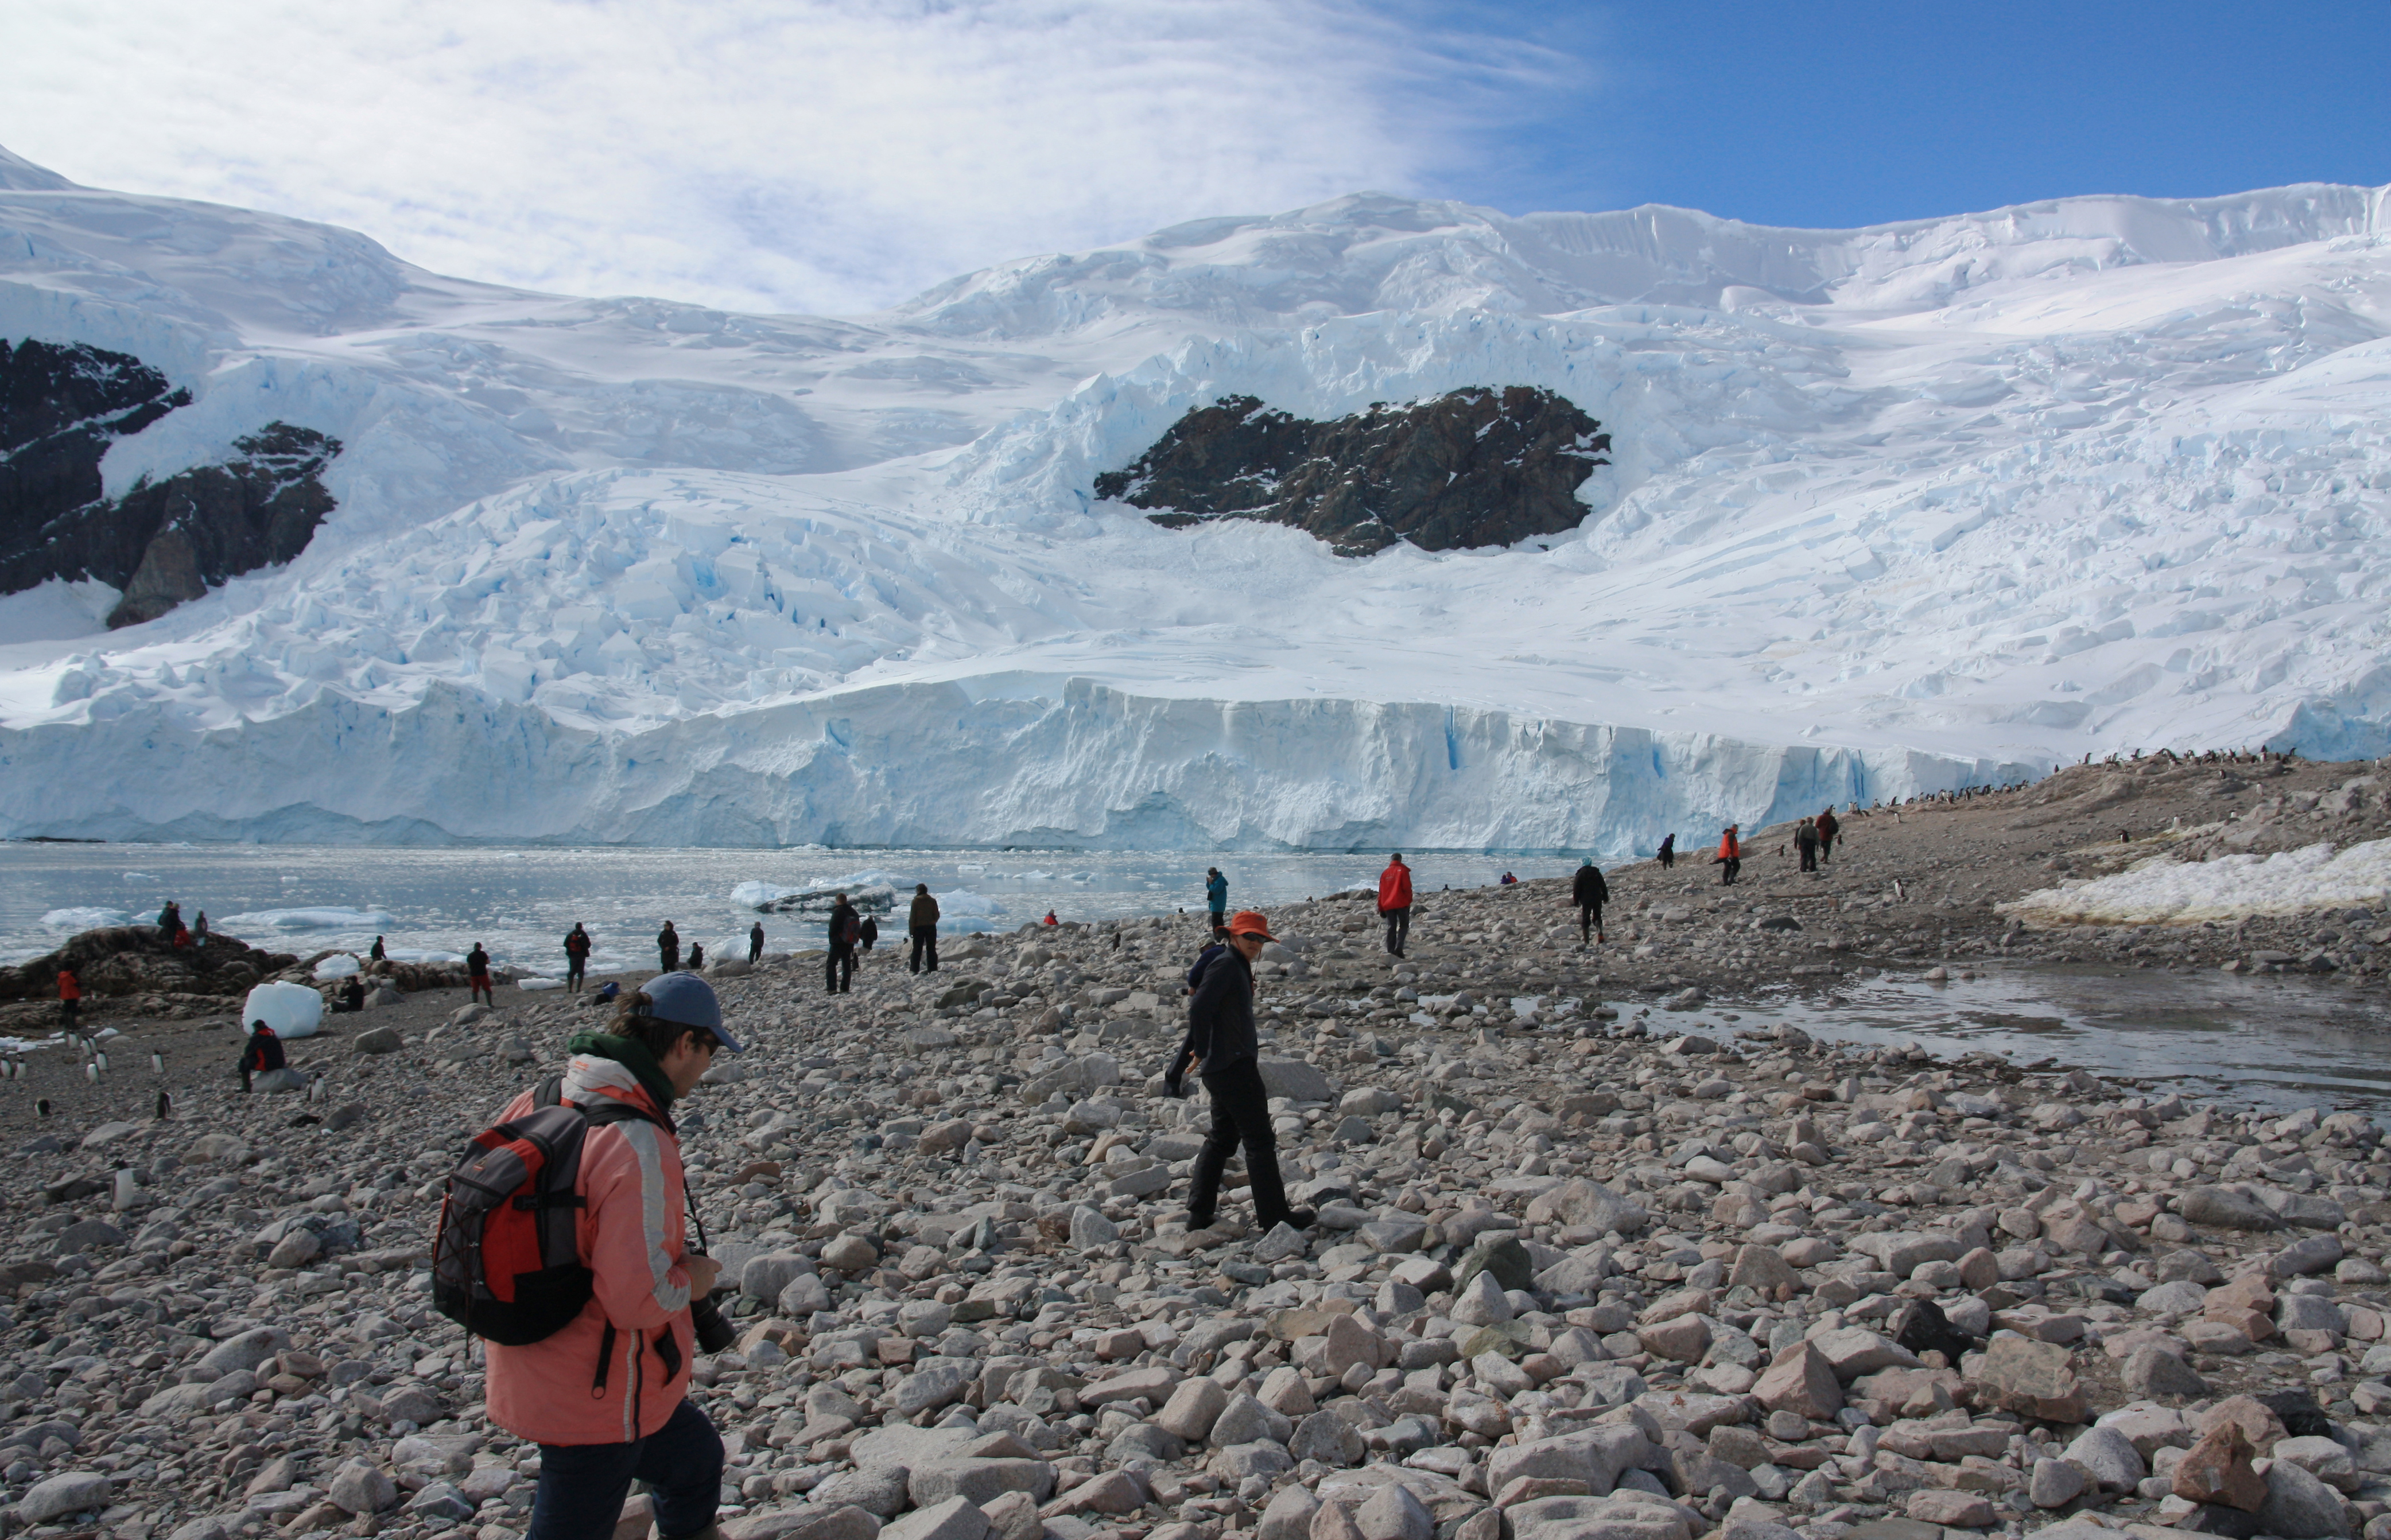 Im Vordergrund laufen Touristen in Funktionskleidung auf steinigem Strand. Im Hintergrund sieht man große Eismassen.